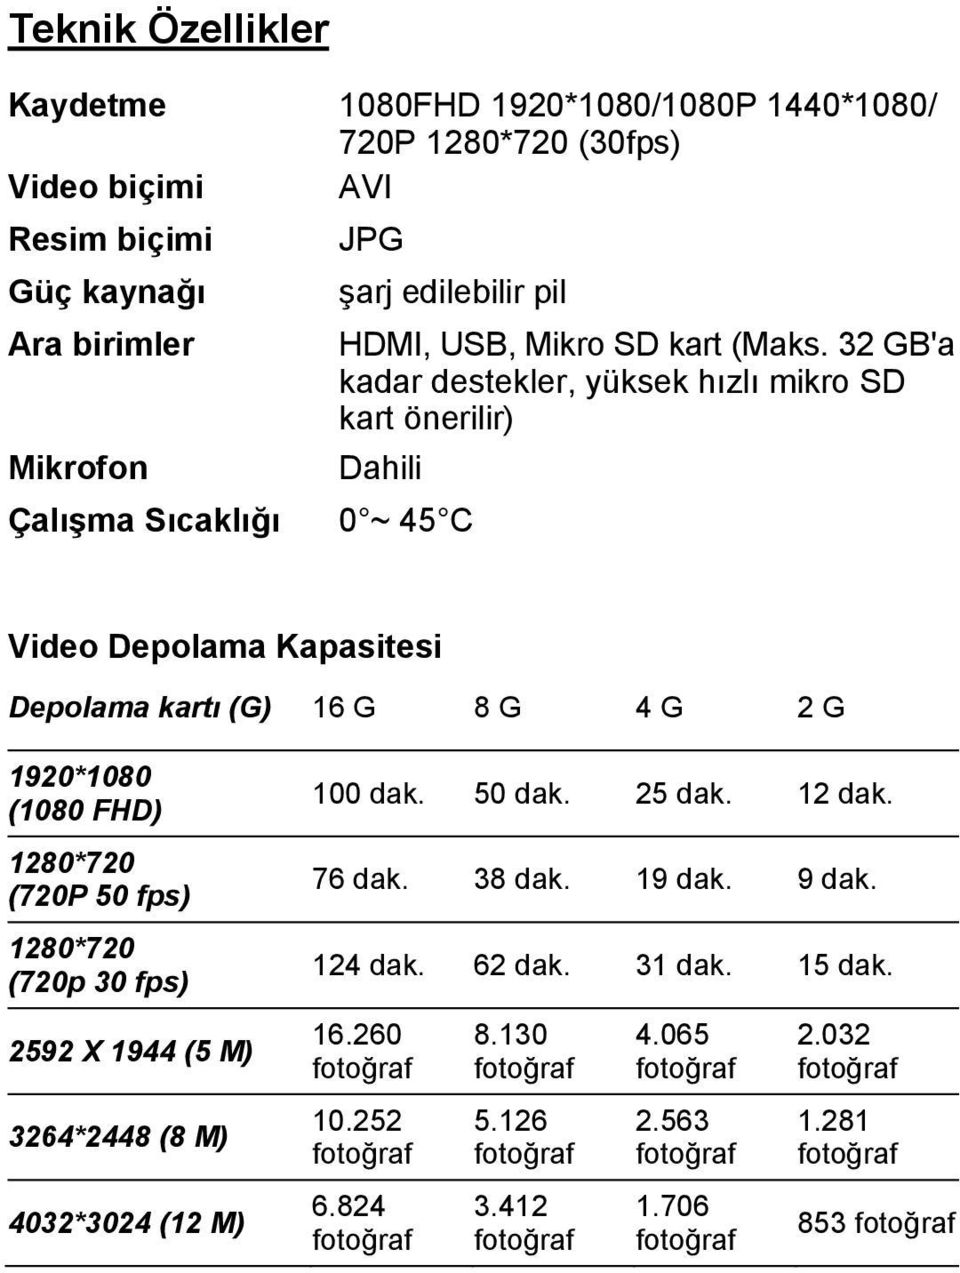 32 GB'a kadar destekler, yüksek hızlı mikro SD kart önerilir) Mikrofon Dahili Çalışma Sıcaklığı 0 ~ 45 C Video Depolama Kapasitesi Depolama kartı (G) 16 G 8 G 4